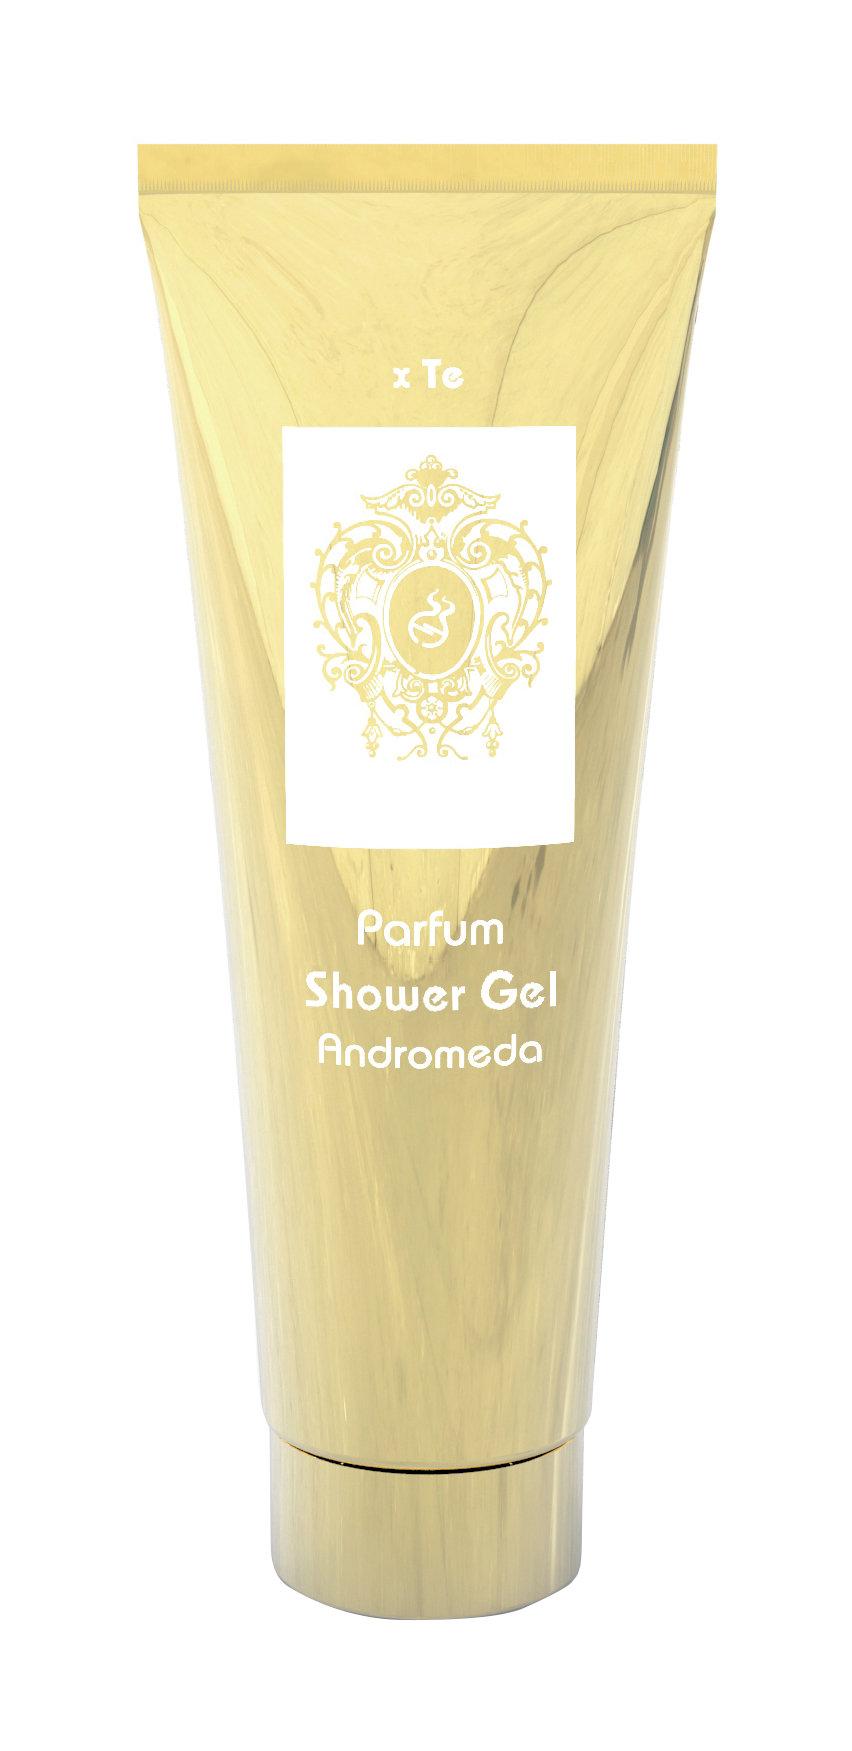 Гель для душа Tiziana Terenzi Andromeda Parfum Shower Gel, 250 мл